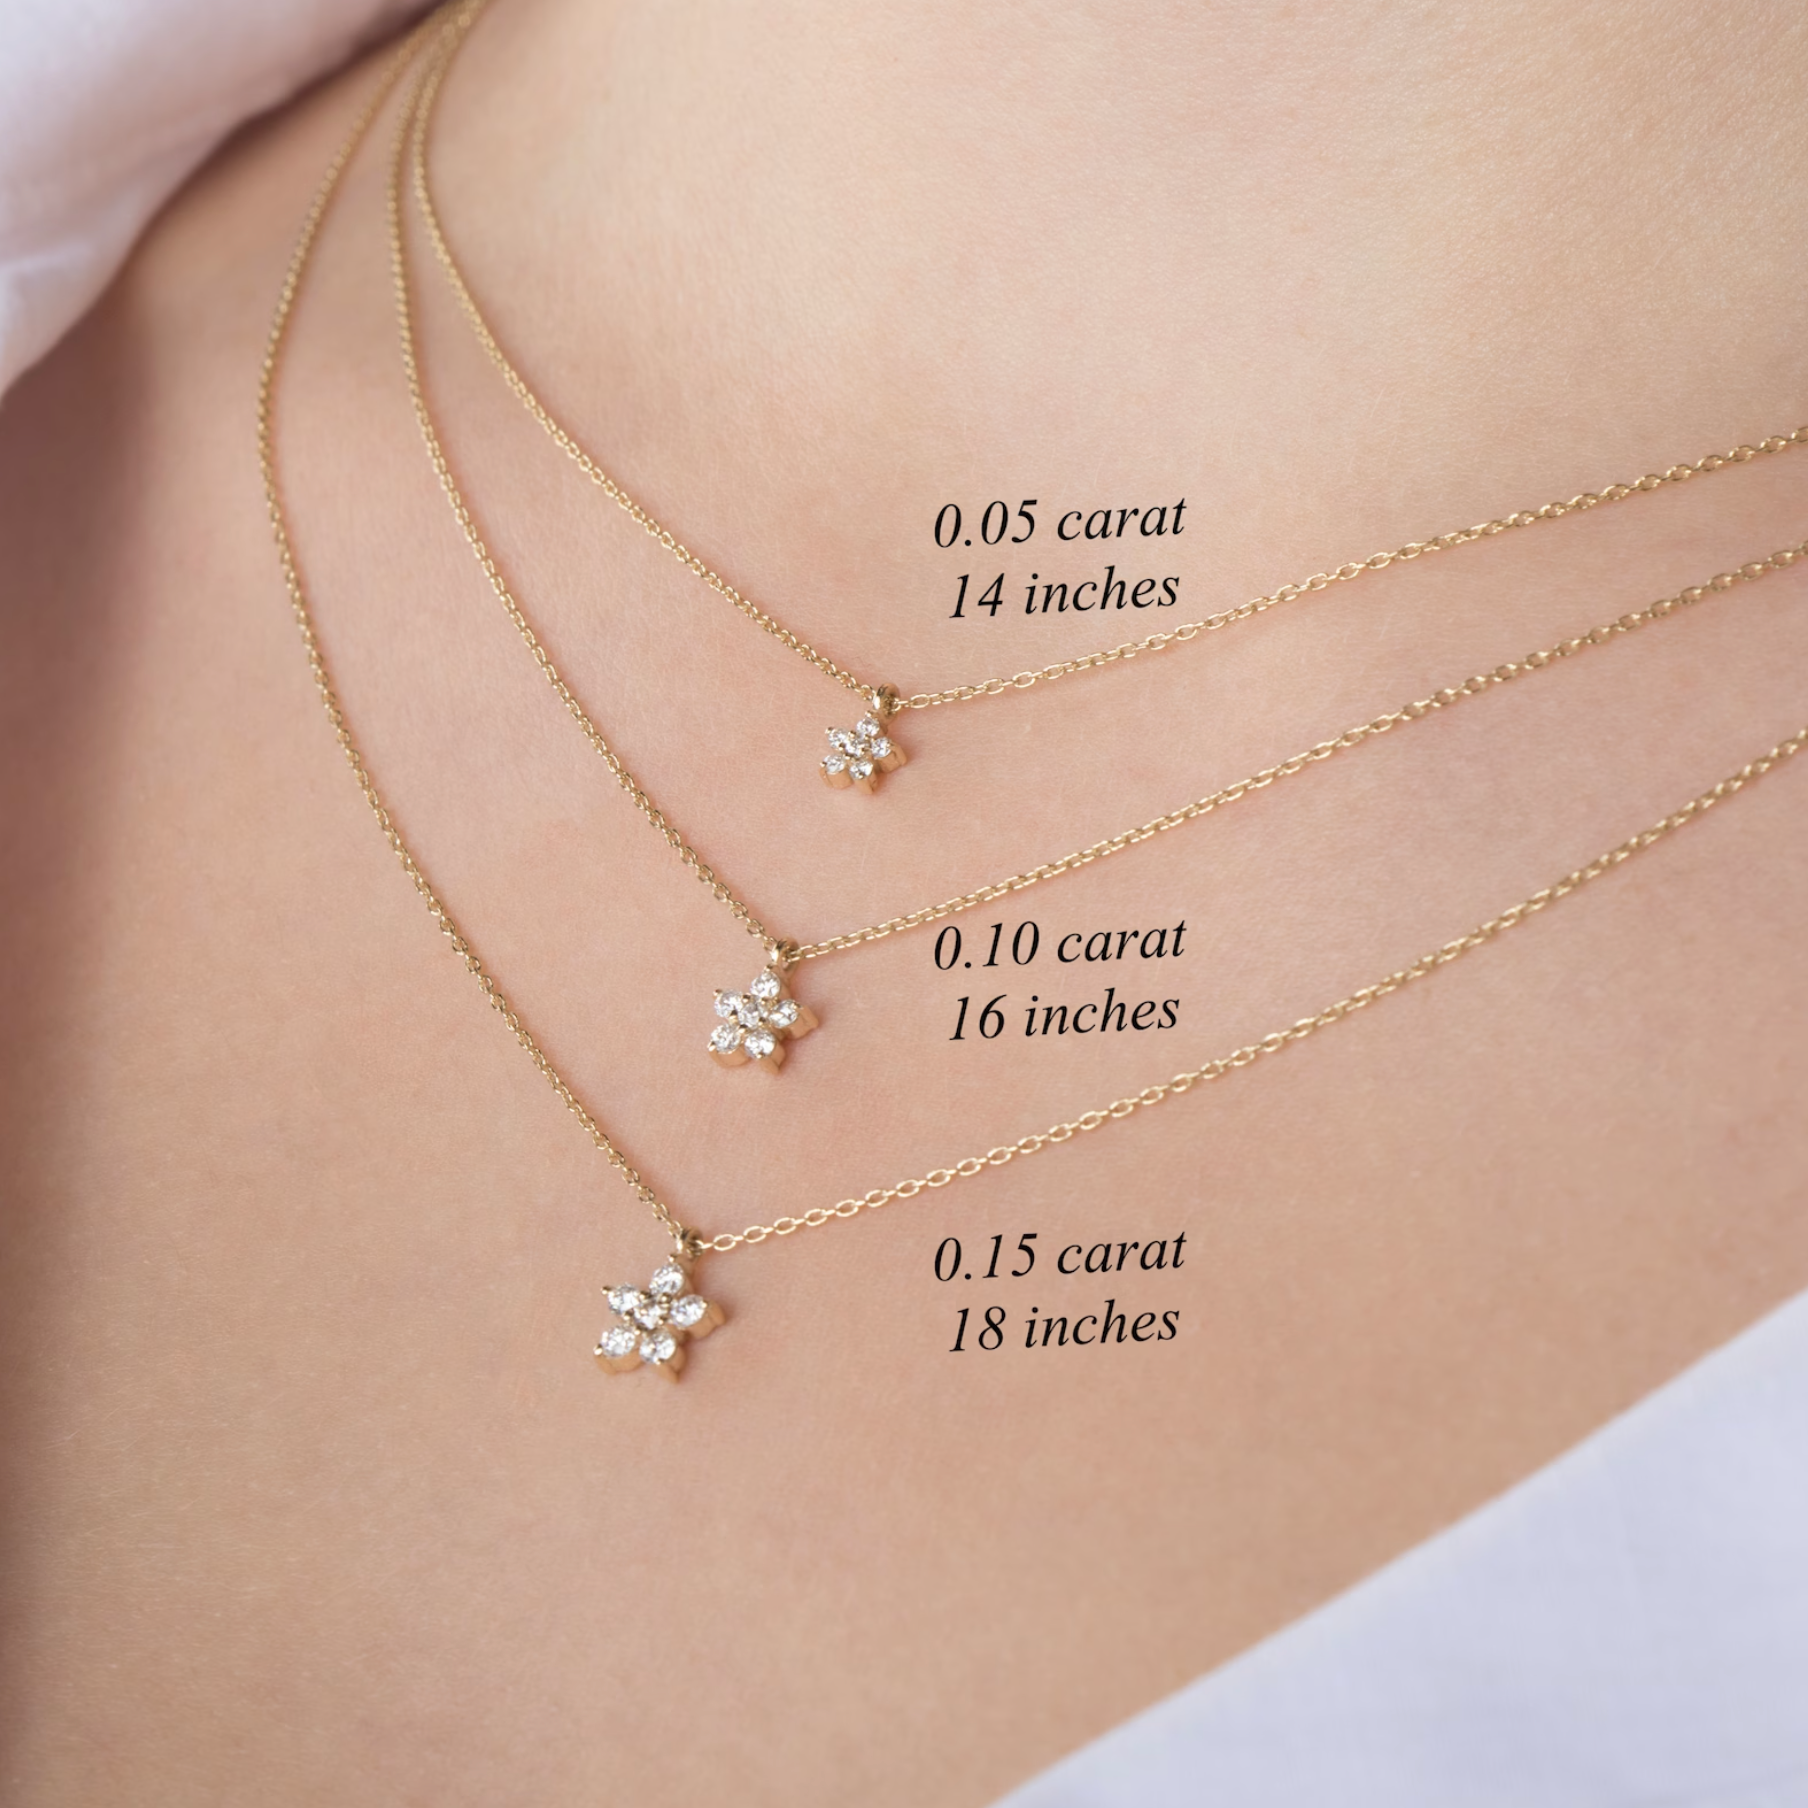 Diamond Flower Necklace - 14K,18K Gold Diamond Flower Necklaces For Women -  Dainty Diamond Necklaces - Fine Jewelry - Birthday Gift